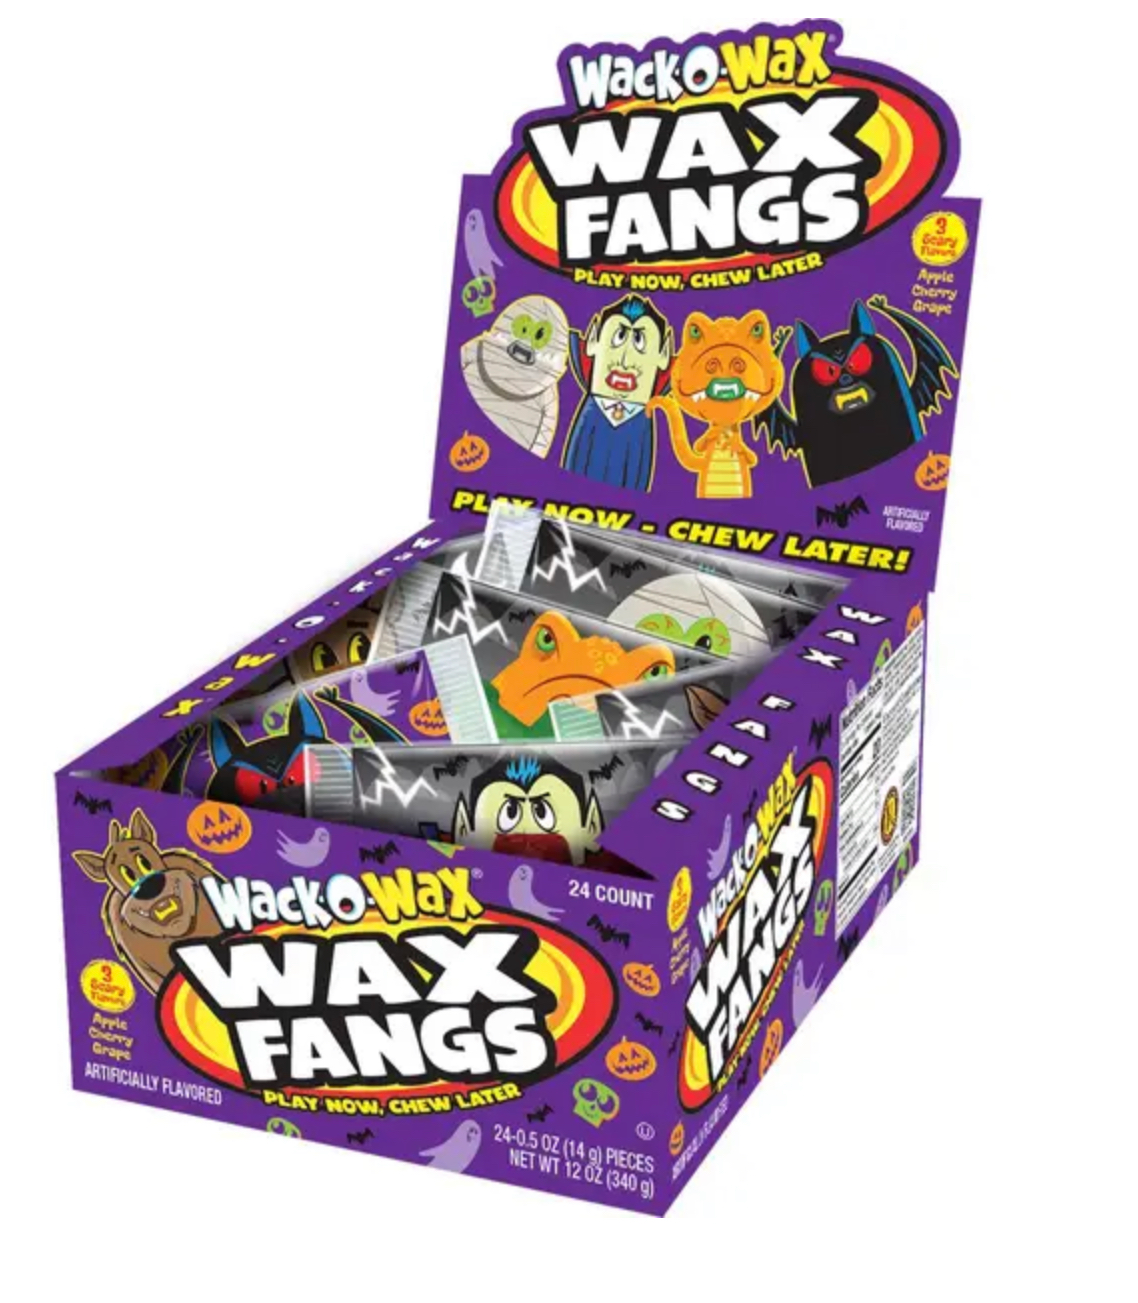 Wack-o-wax - Wax Fang (1pz 14g)